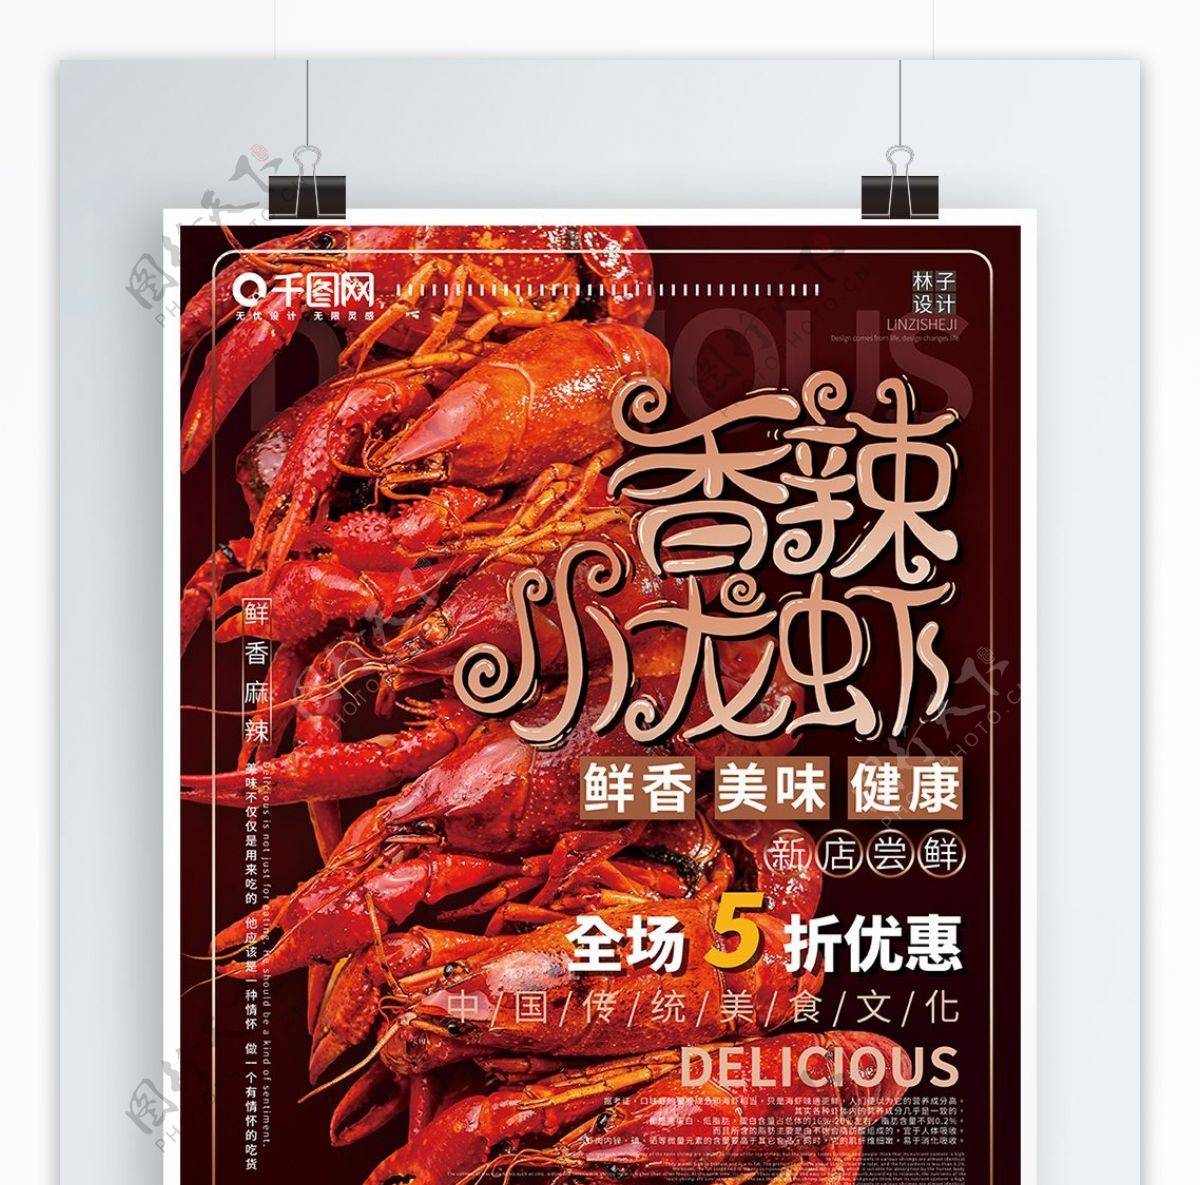 简约大气香辣小龙虾美食宣传海报